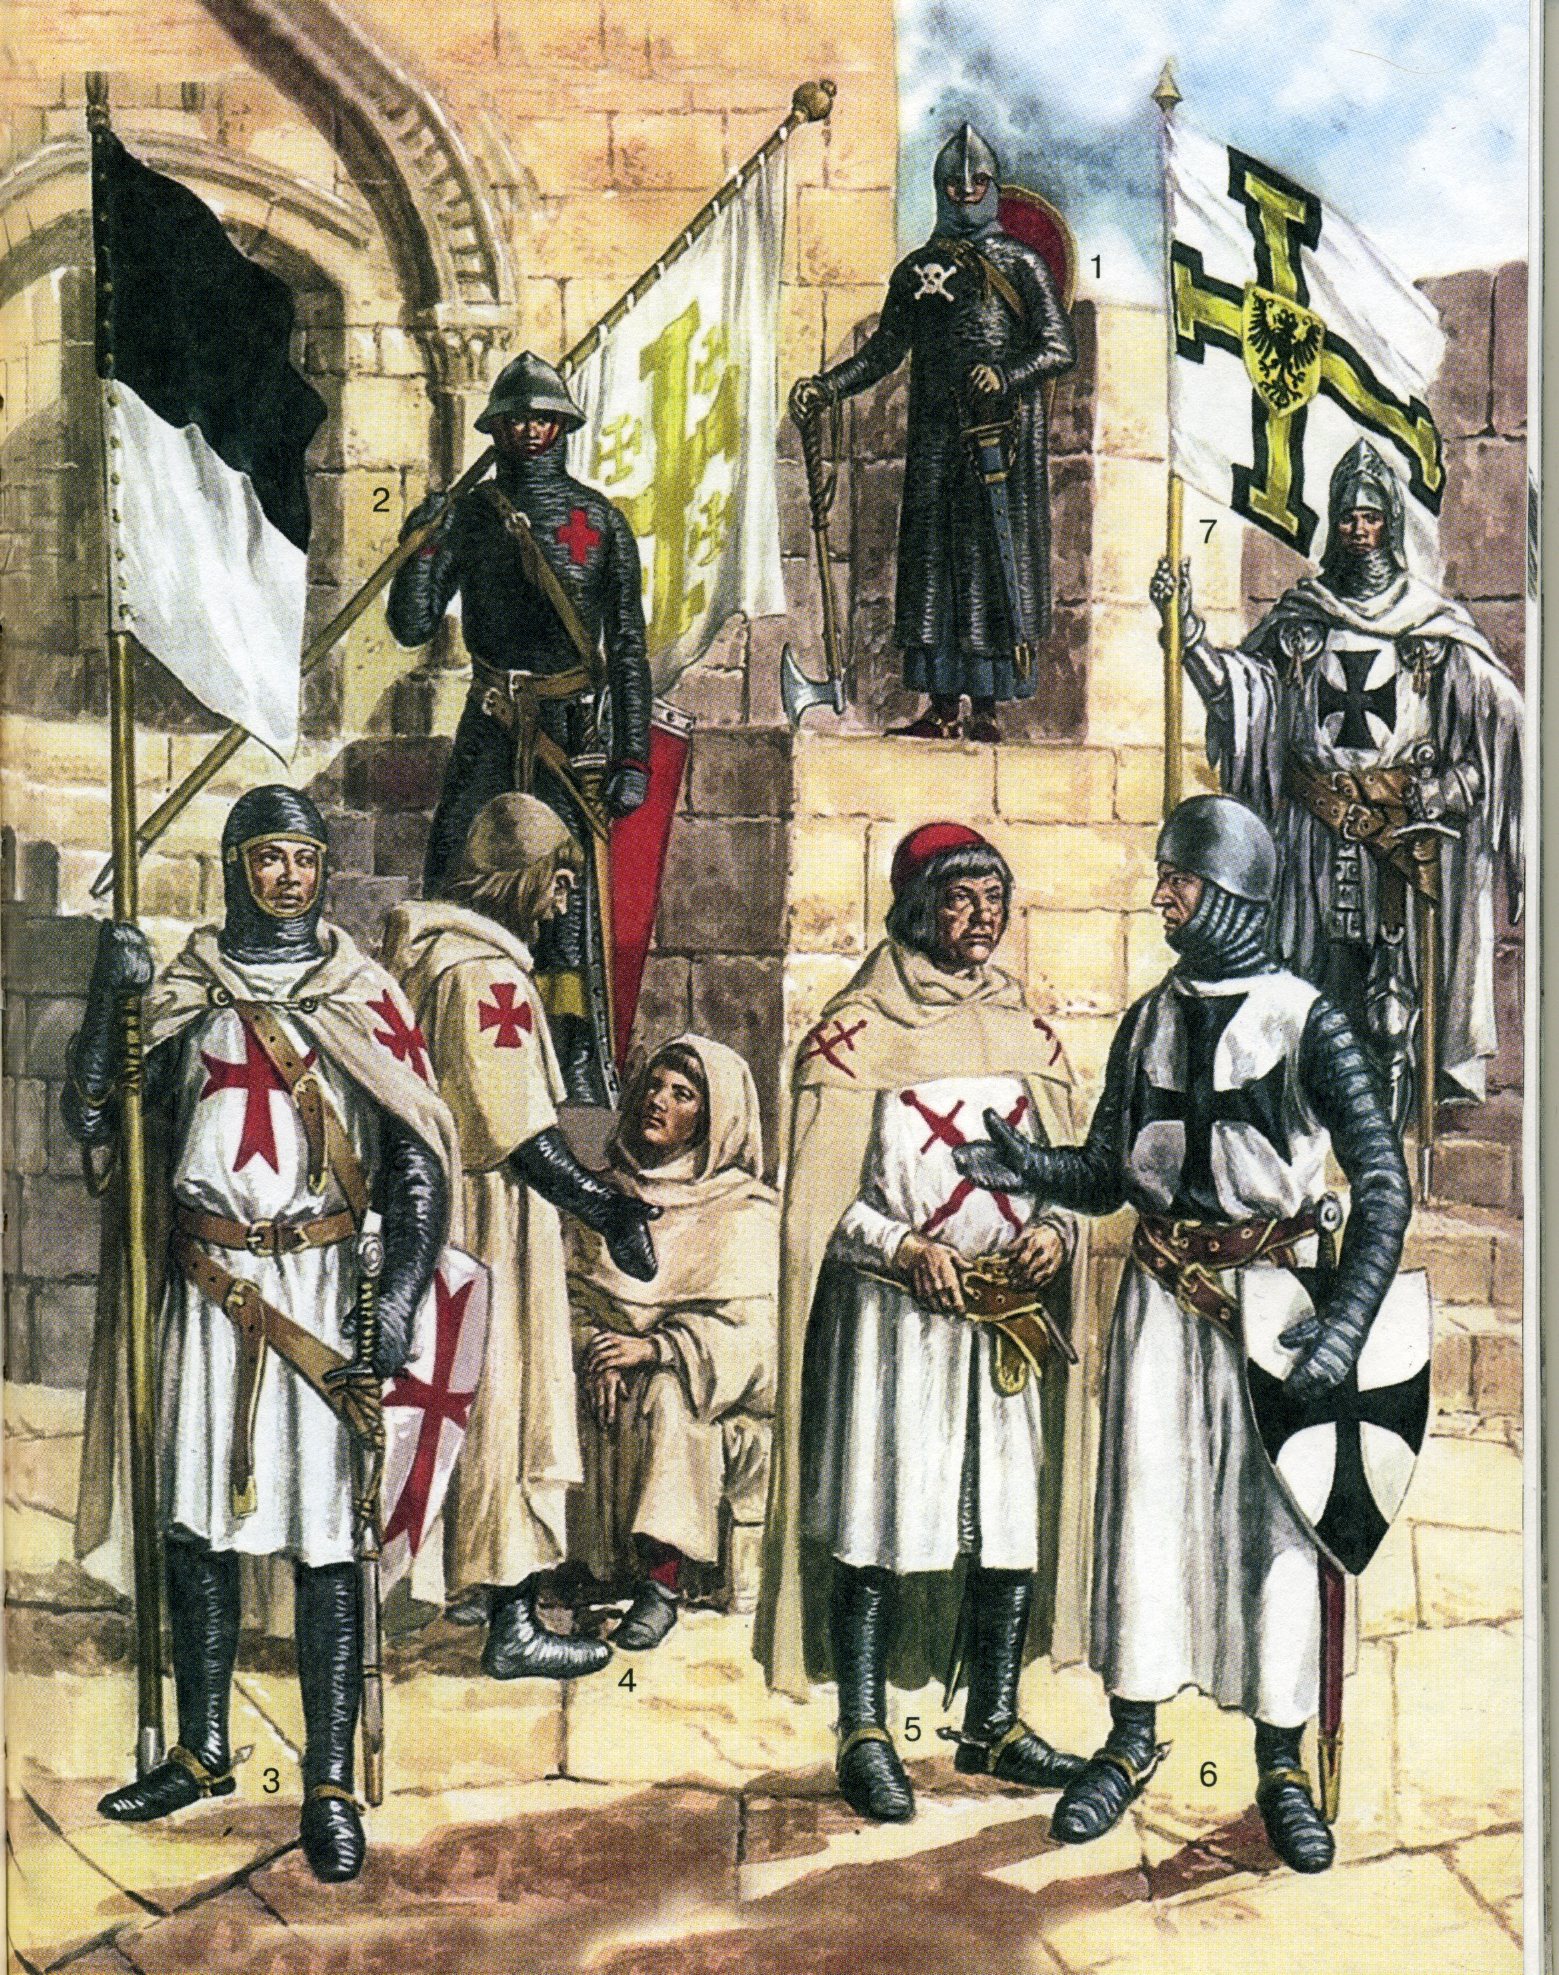 рыцари средневековья картинки смотреть рыцари средневековья